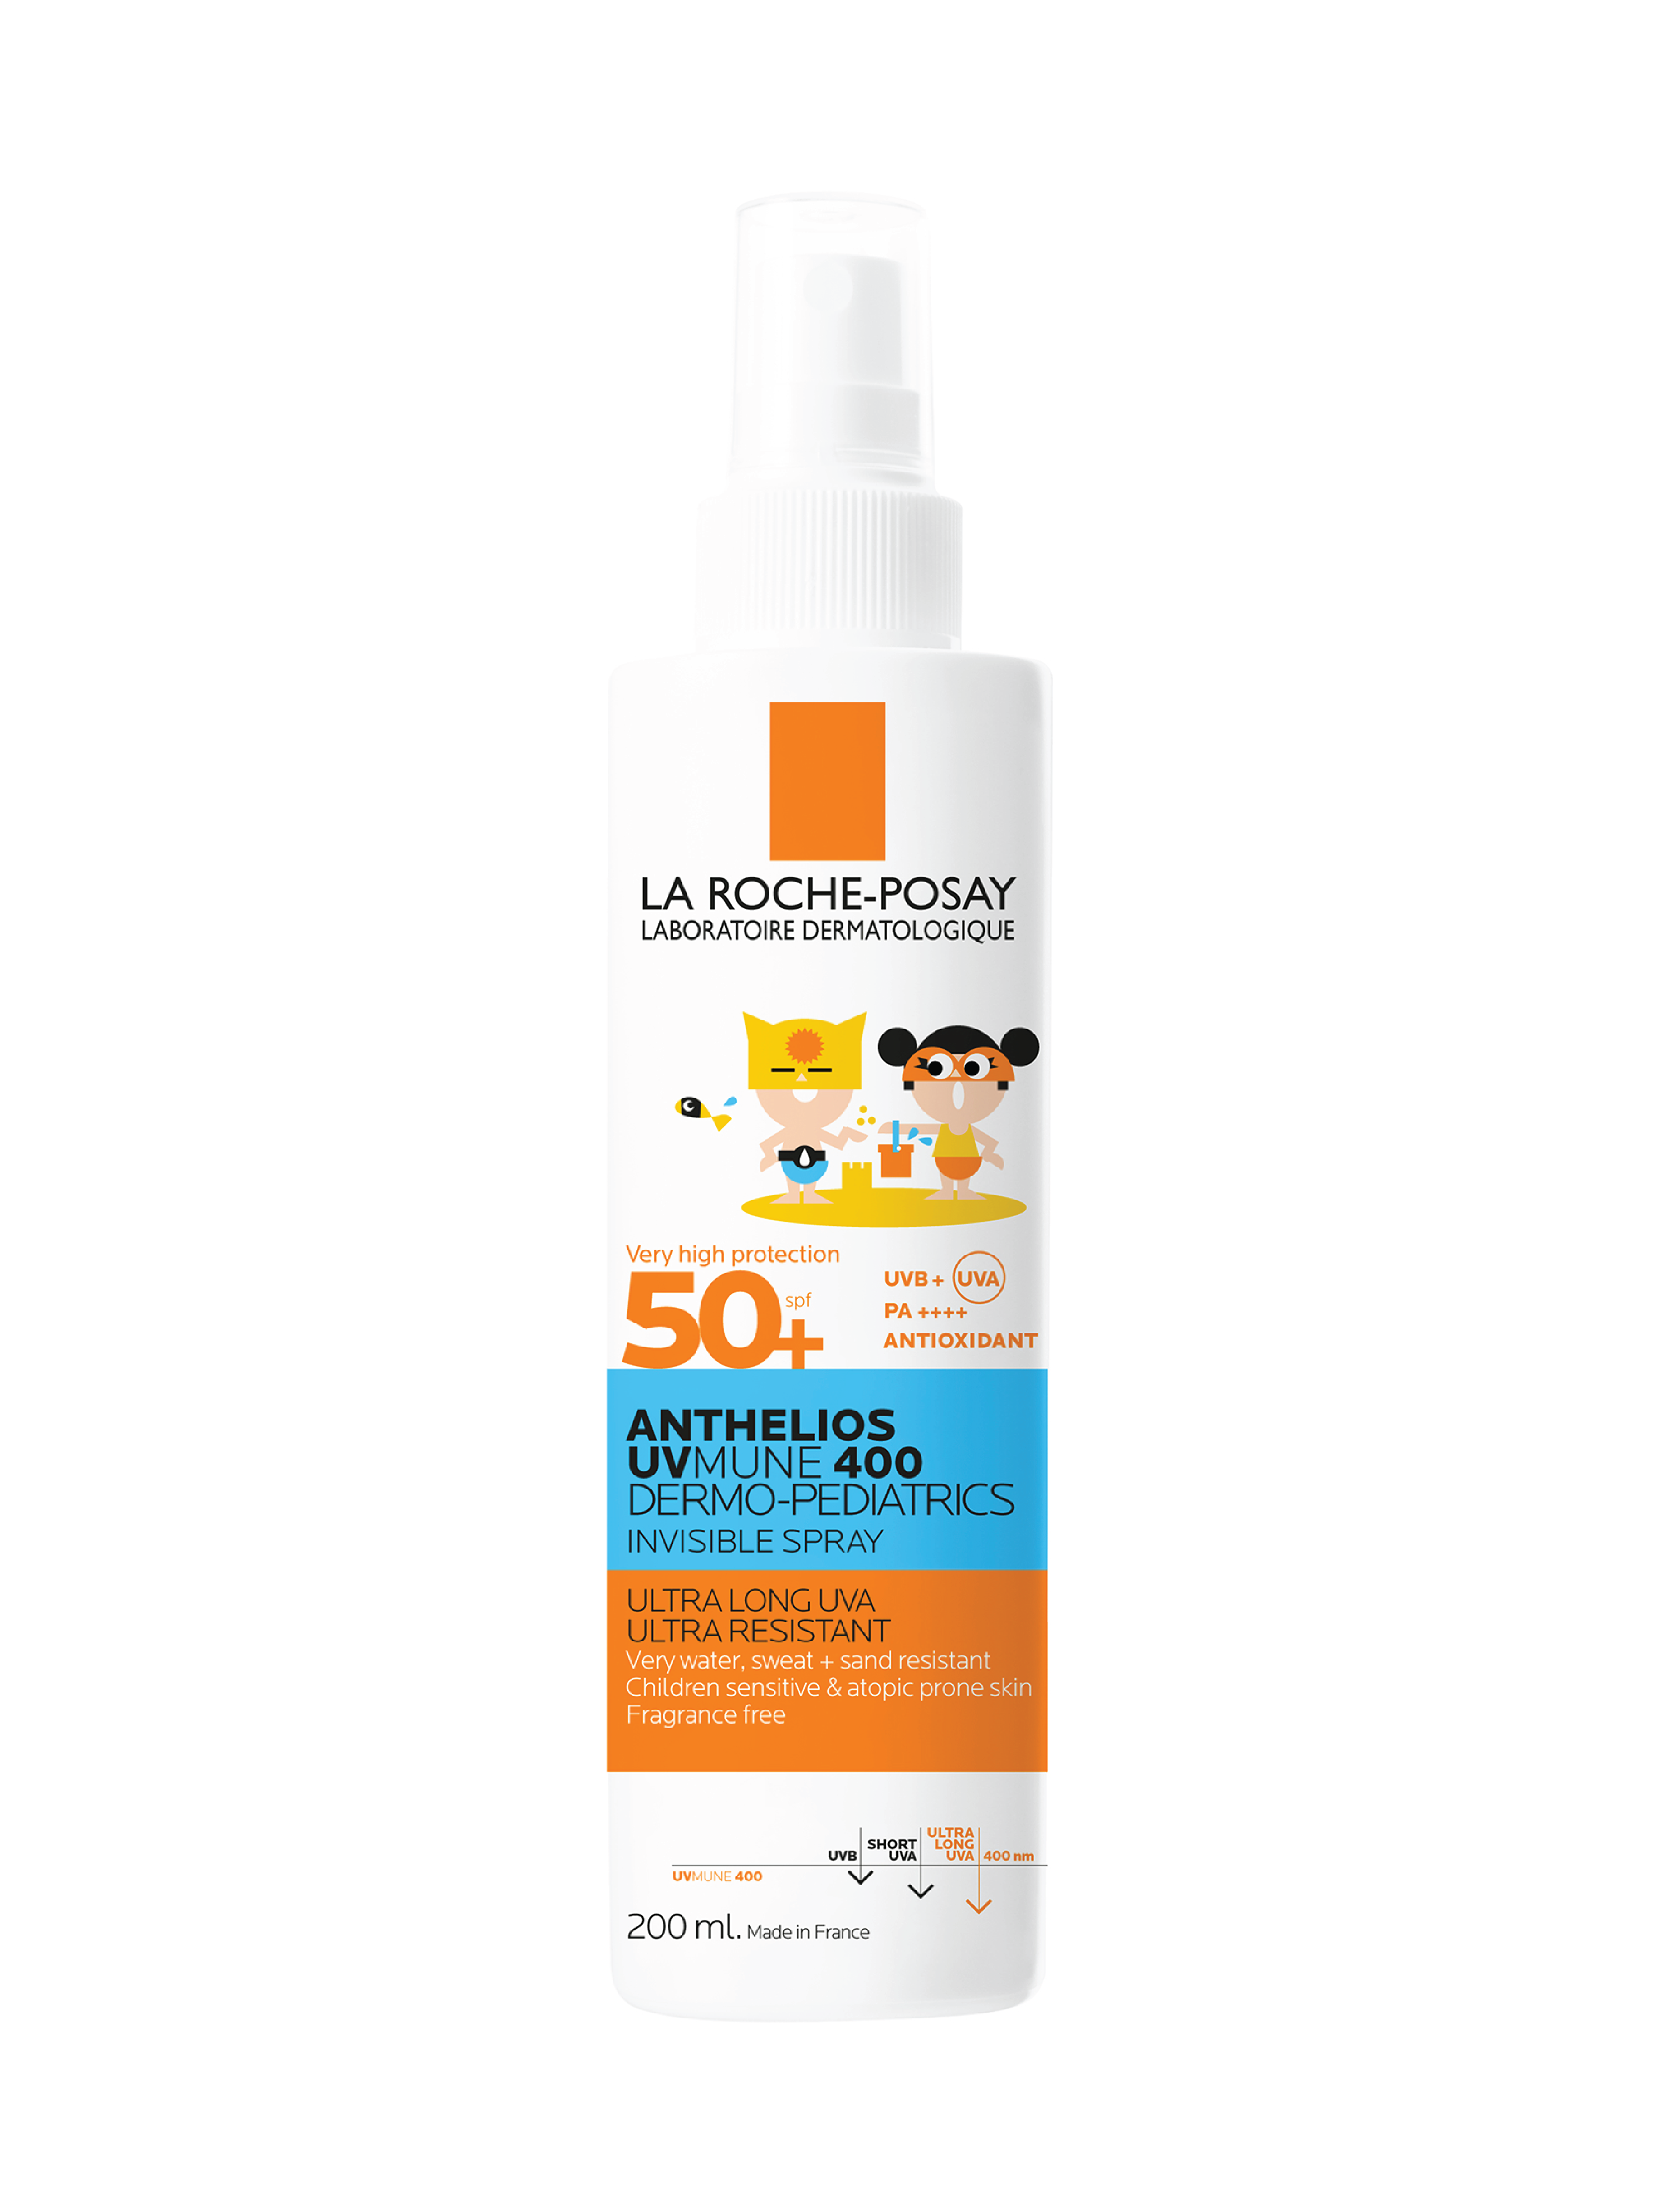 La Roche-Posay Anthelios UVMUNE 400 Kids Invisible Spray, 200 ml